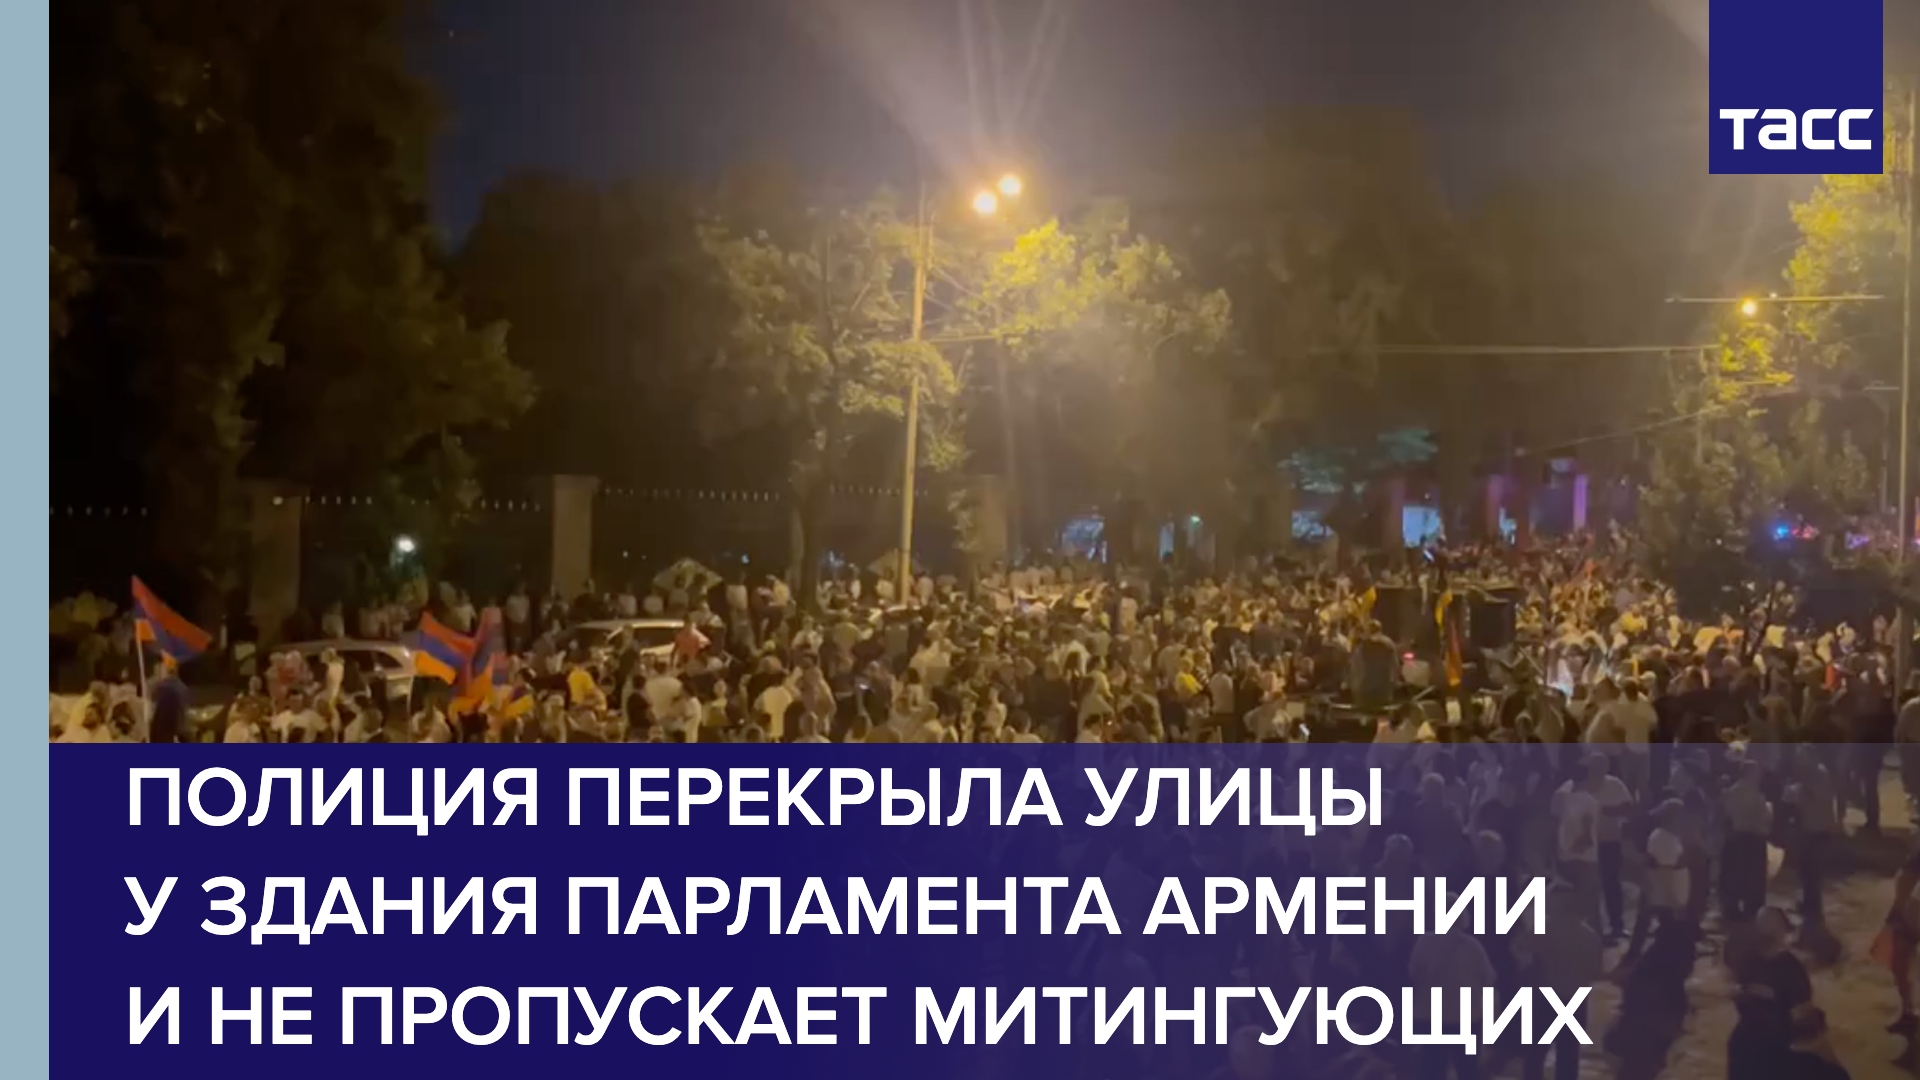 Полиция перекрыла улицы у здания парламента Армении и не пропускает митингующих